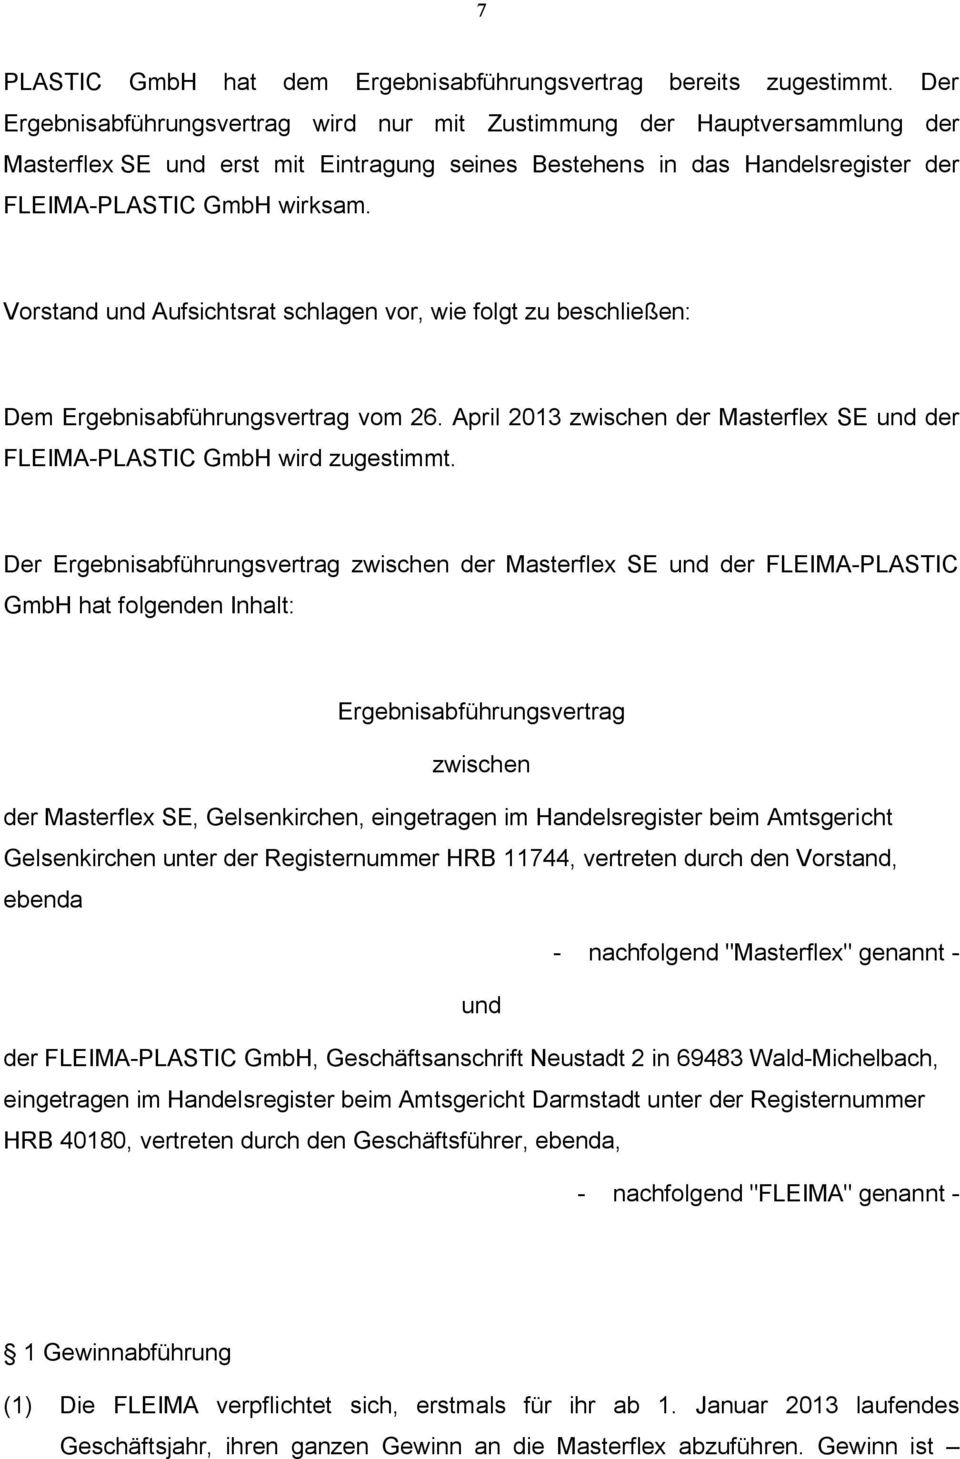 Vorstand und Aufsichtsrat schlagen vor, wie folgt zu beschließen: Dem Ergebnisabführungsvertrag vom 26. April 2013 zwischen der Masterflex SE und der FLEIMA-PLASTIC GmbH wird zugestimmt.